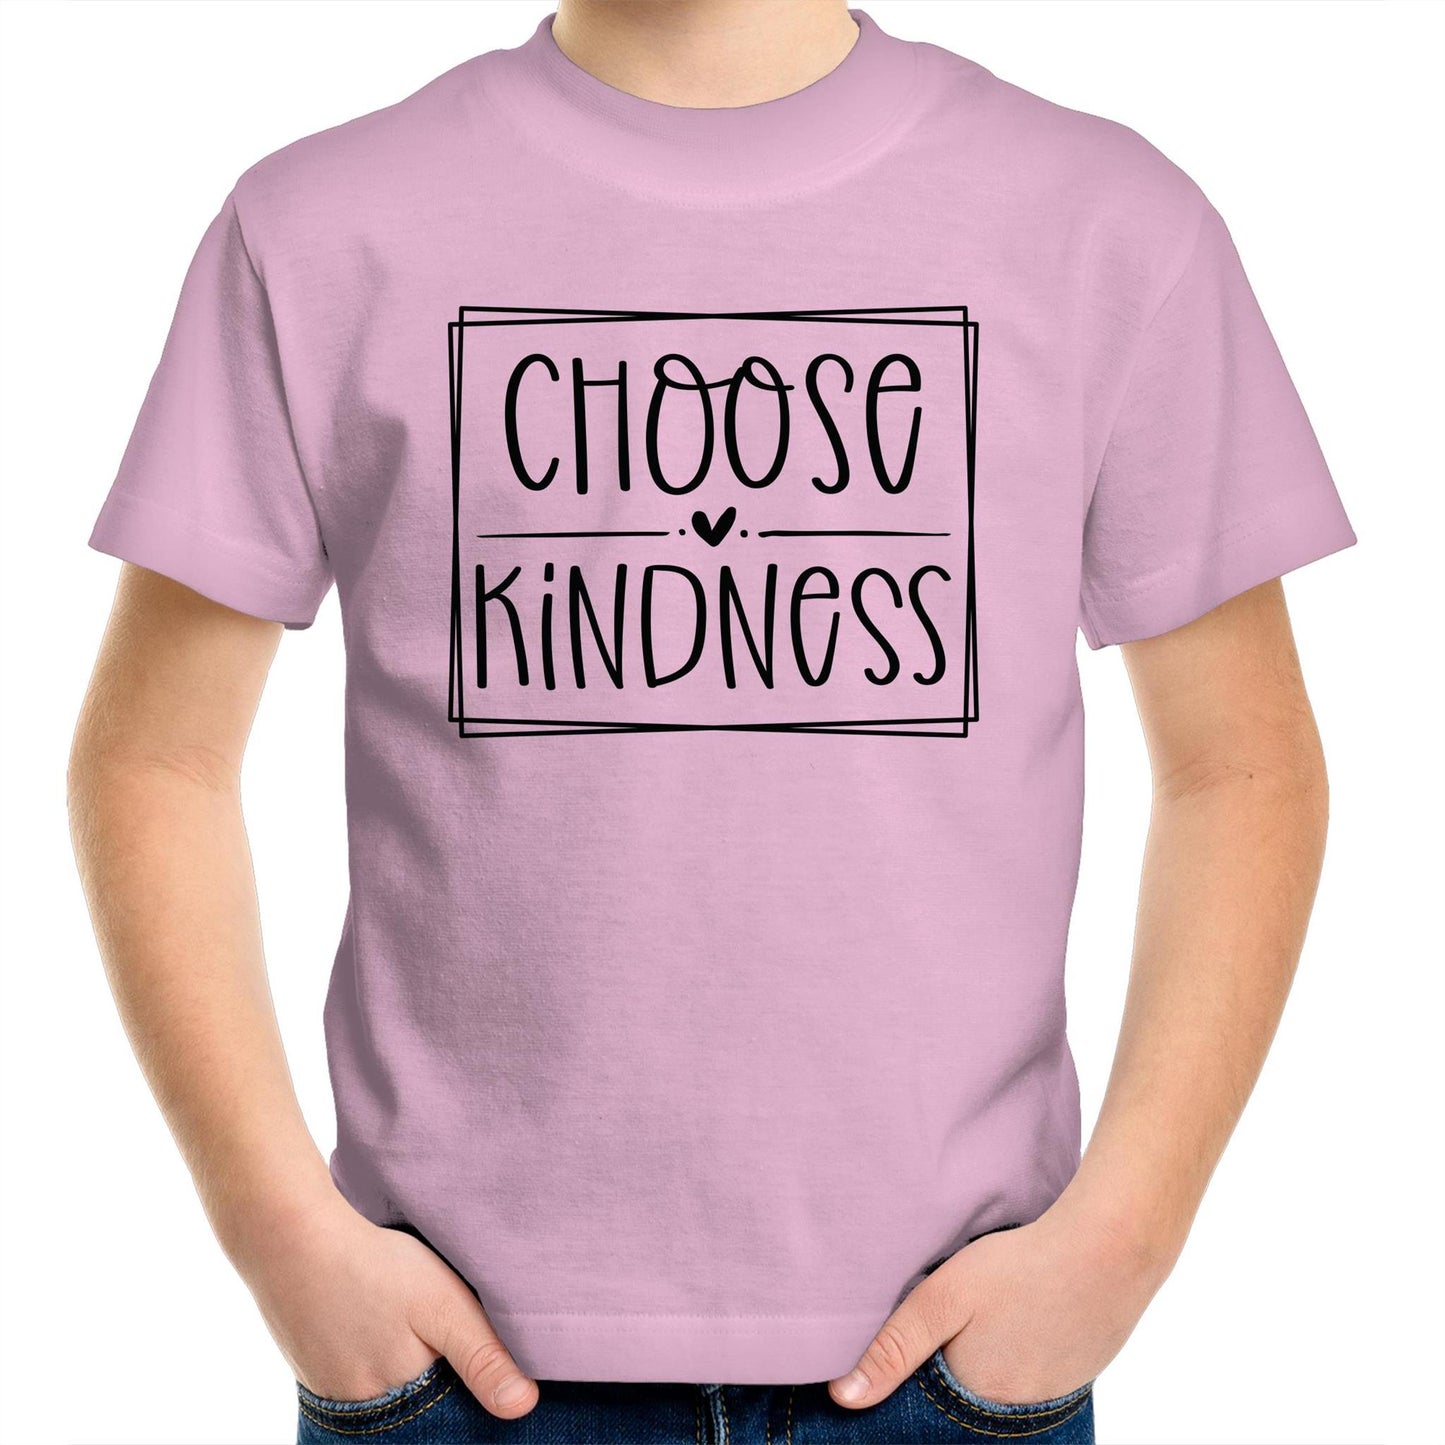 Kids Shirt - Choose Kindness Little Heart